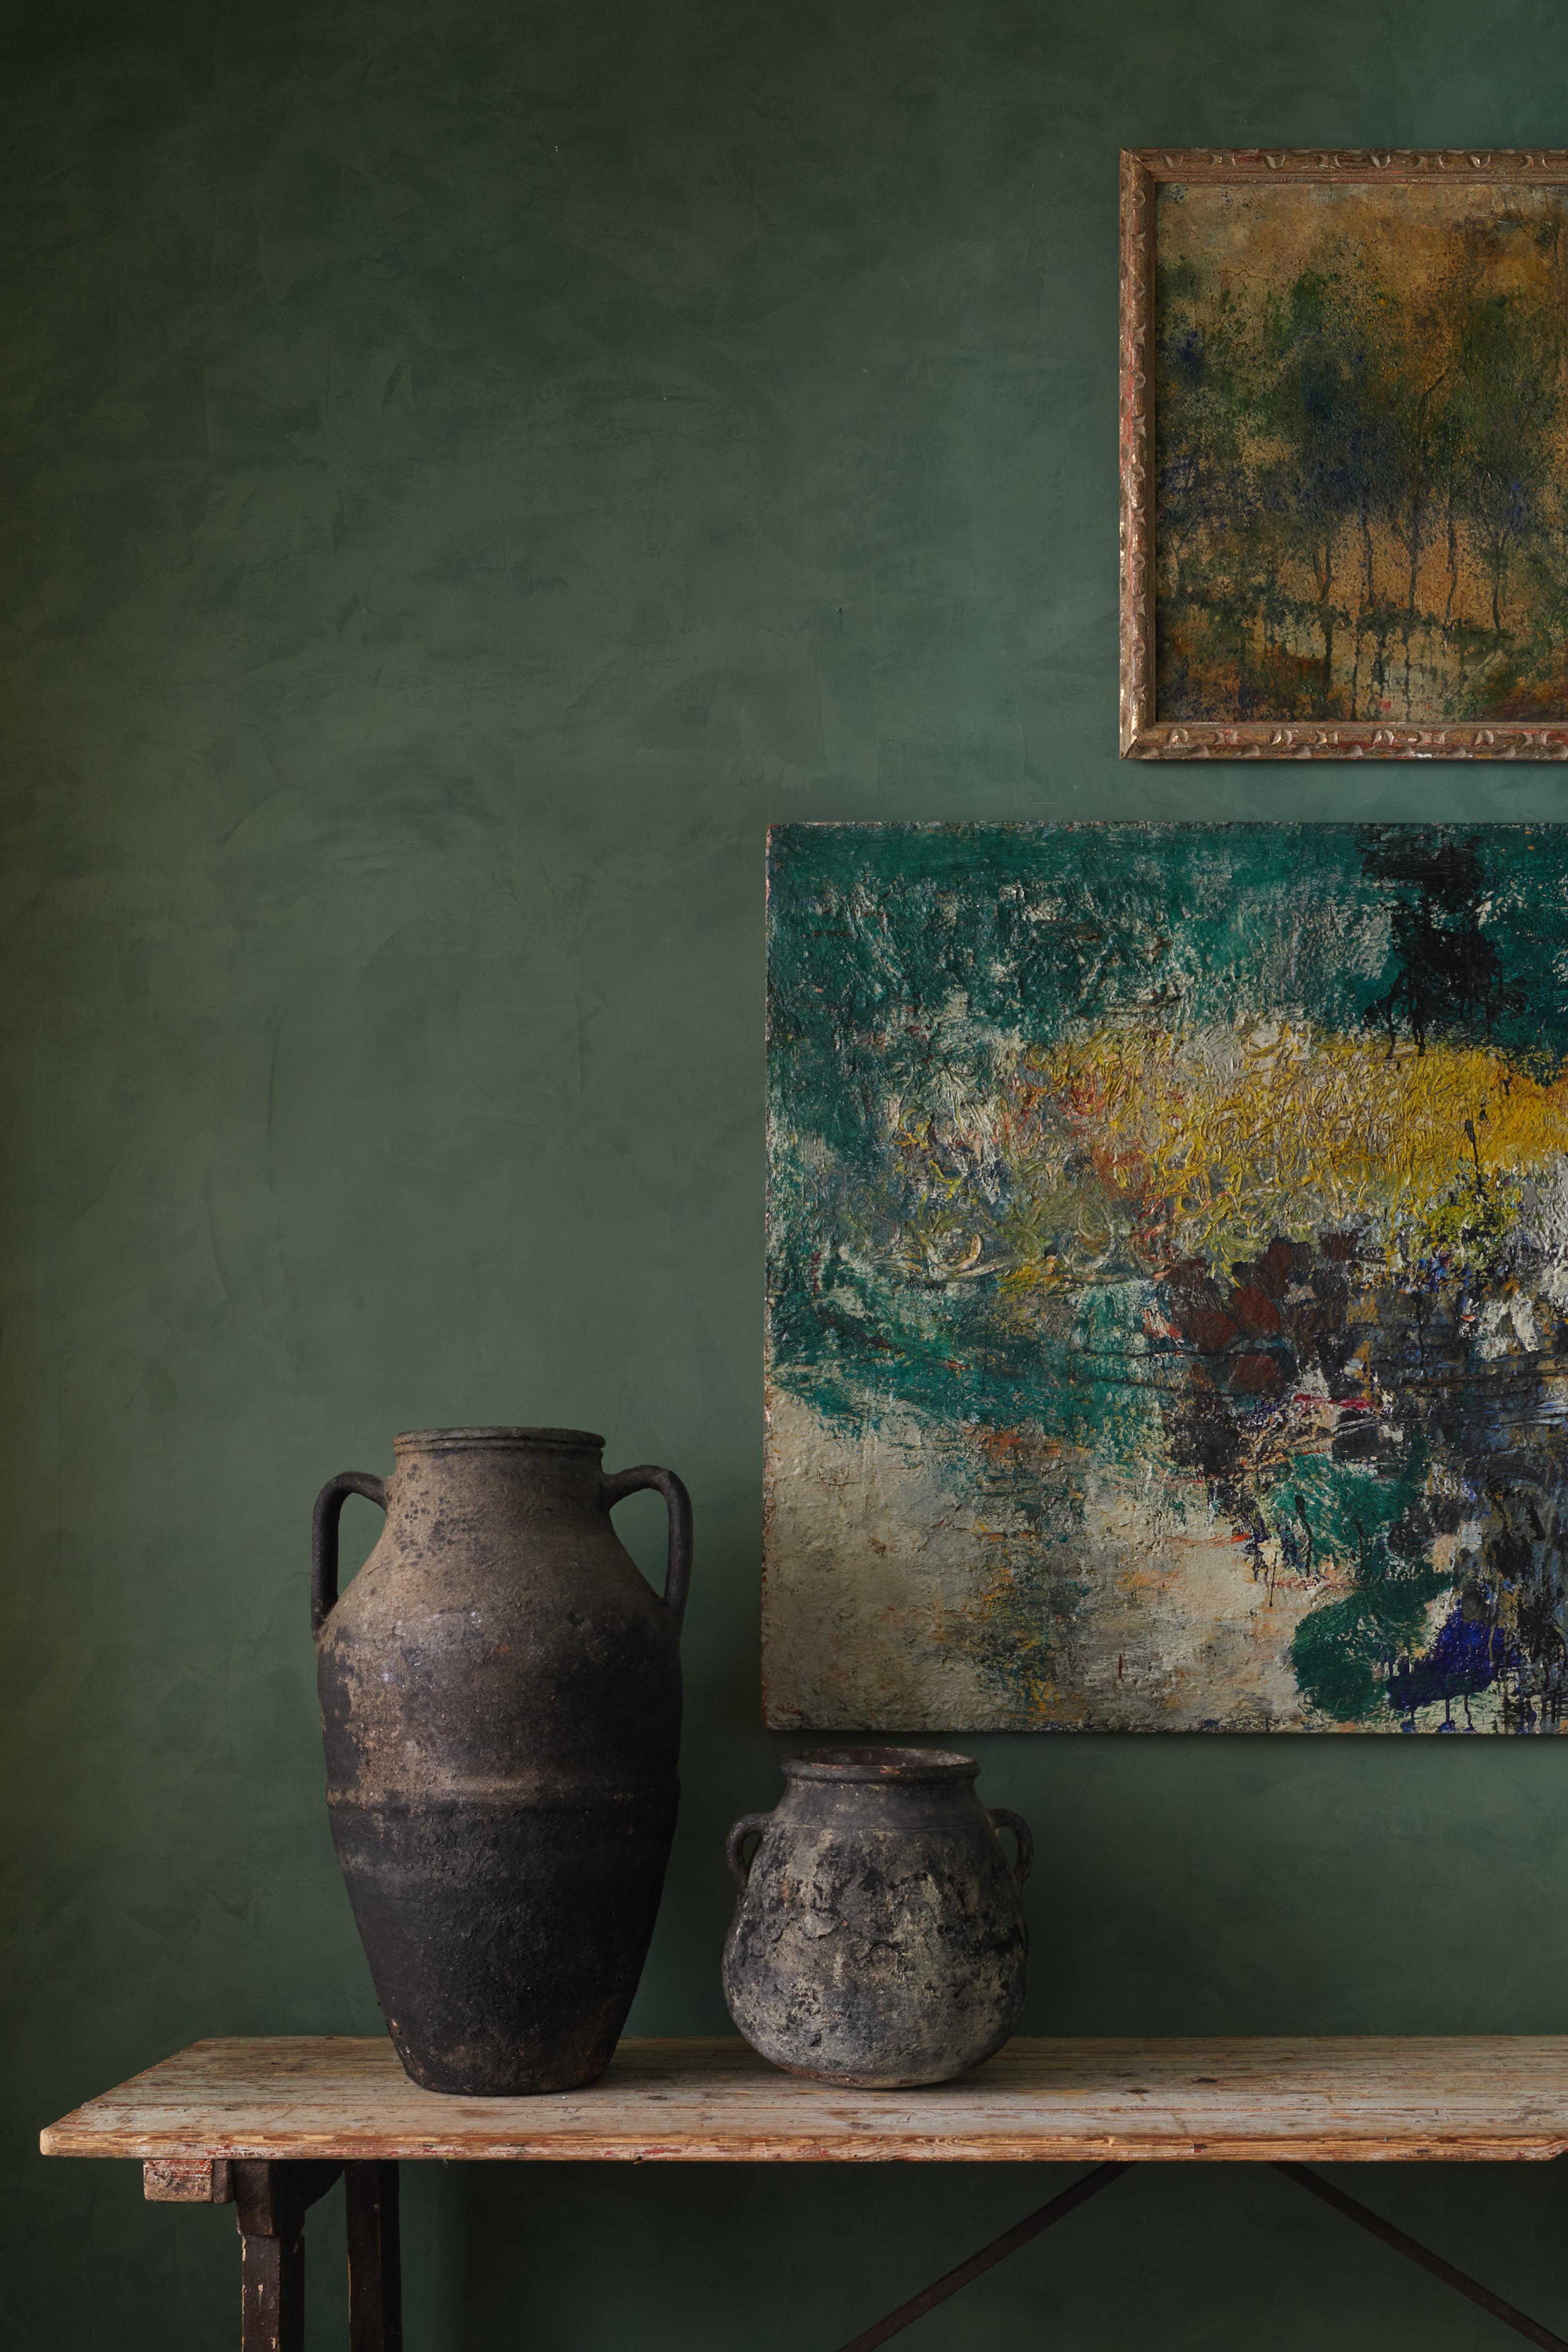 Abstraktes Gemälde von Ulf Trotzig (1925-2013), Moderne der Mitte des Jahrhunderts



Ulf Trotzig (1925-2013) war ein meisterhafter schwedischer Maler, der für seine Beiträge zur abstrakten Kunst bekannt ist. Trotzigs Erbe wird in angesehenen